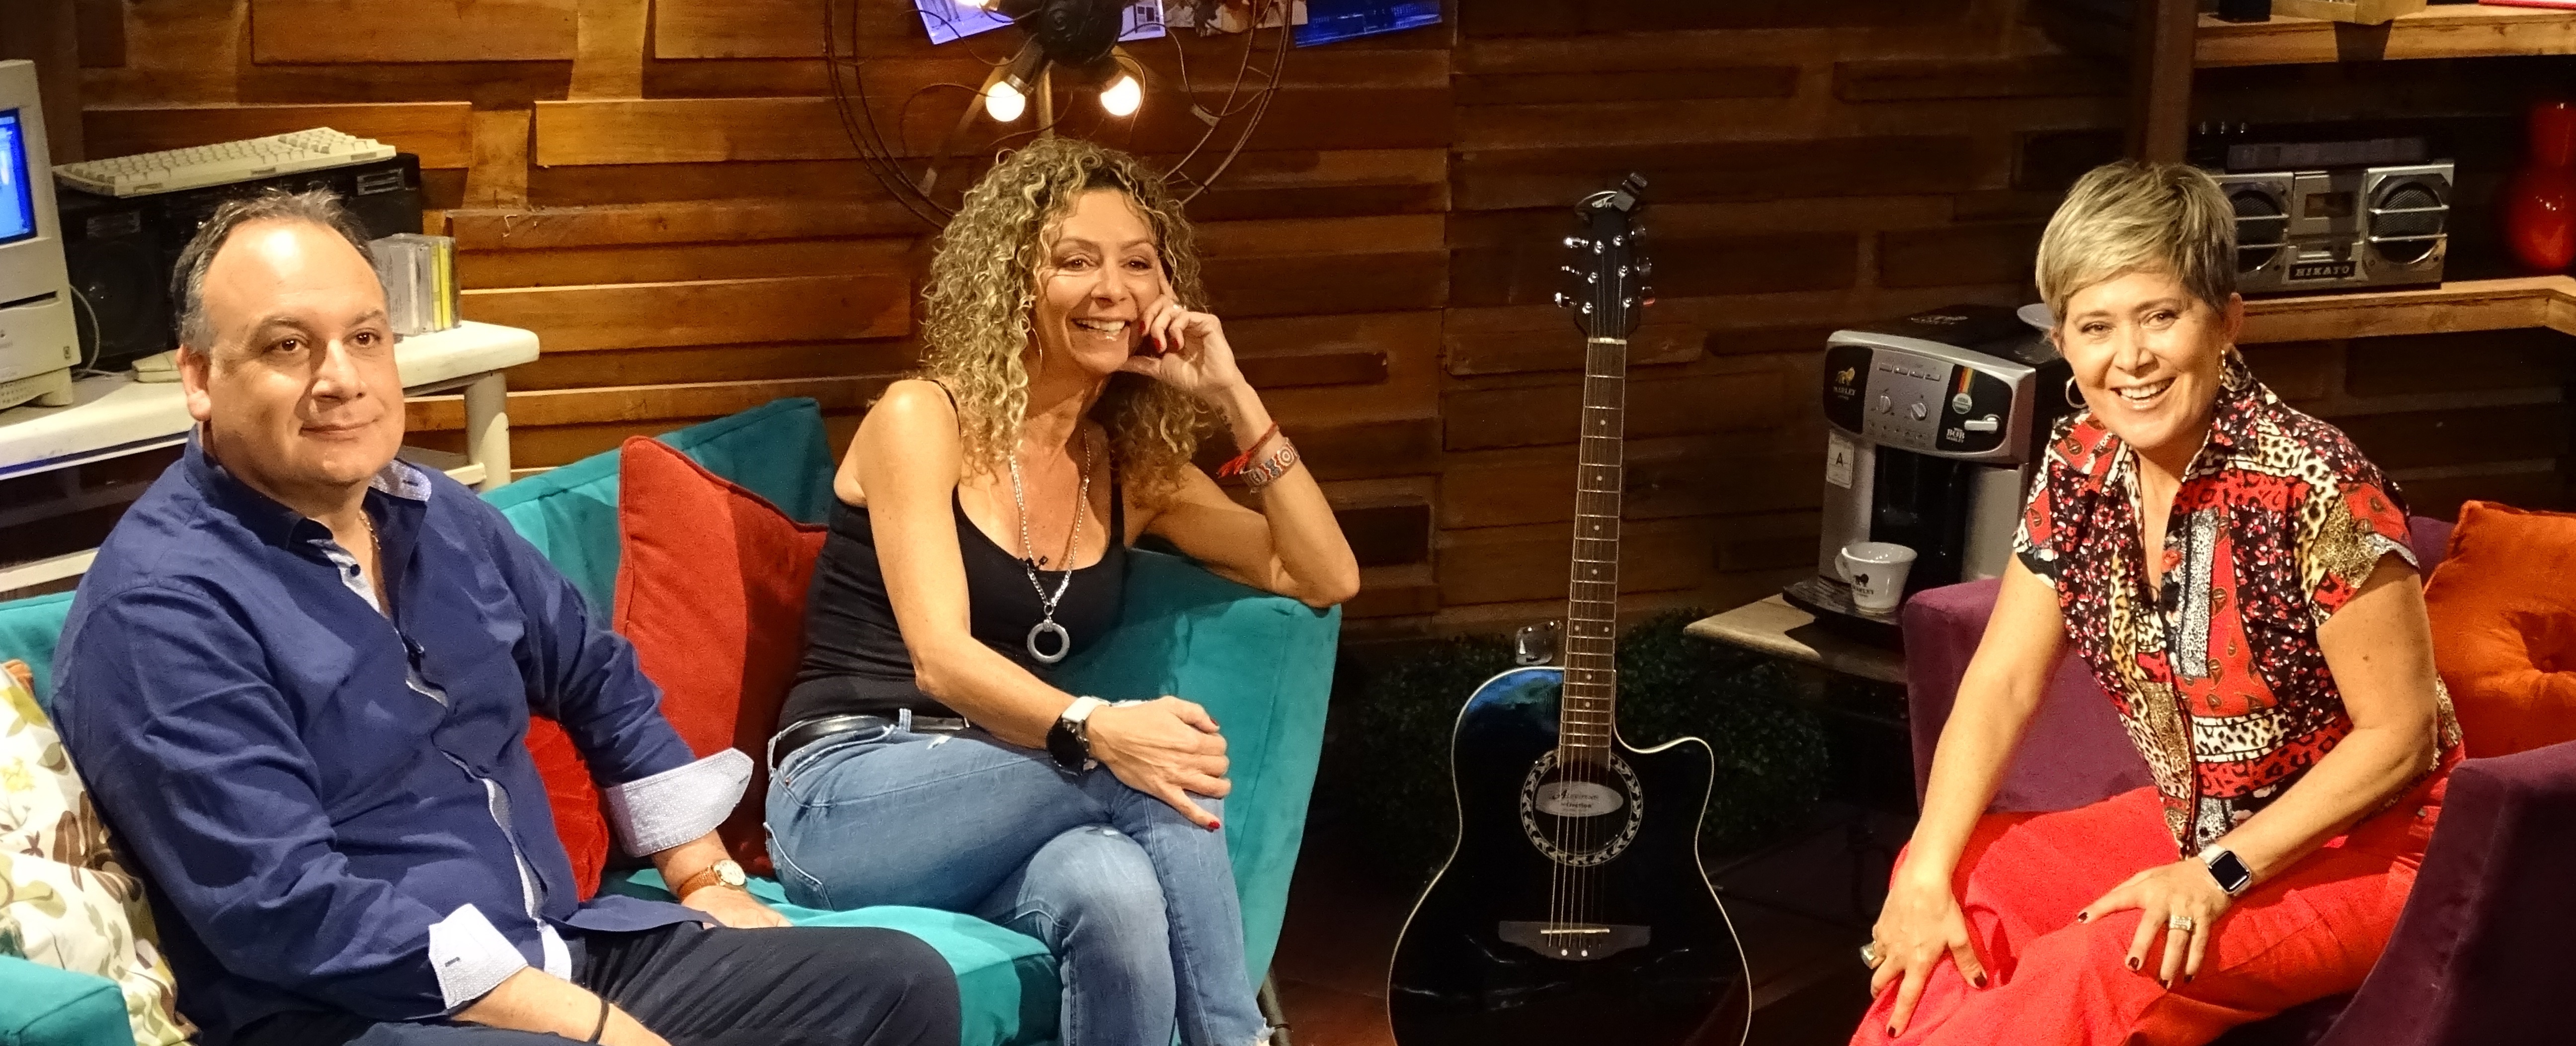 Andrea Tessa lanza panorama especial en cuarentena para los más nostálgicos en REC TV